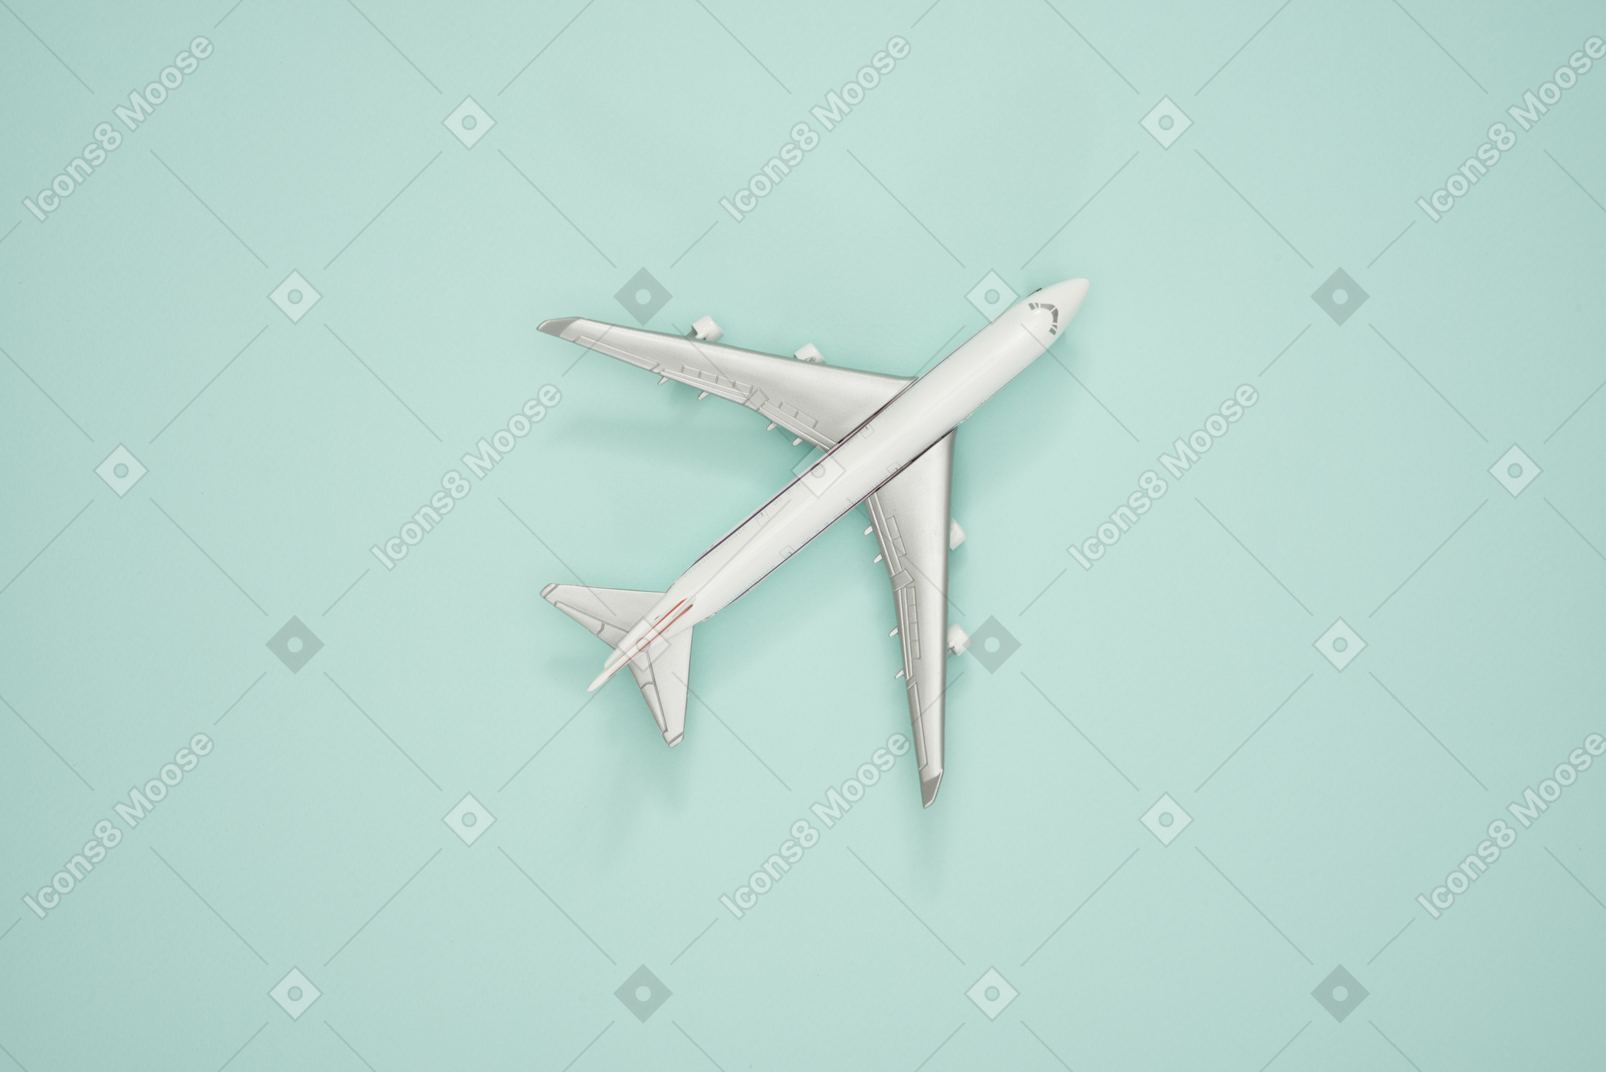 Modelo de escala de avião em um fundo turquesa